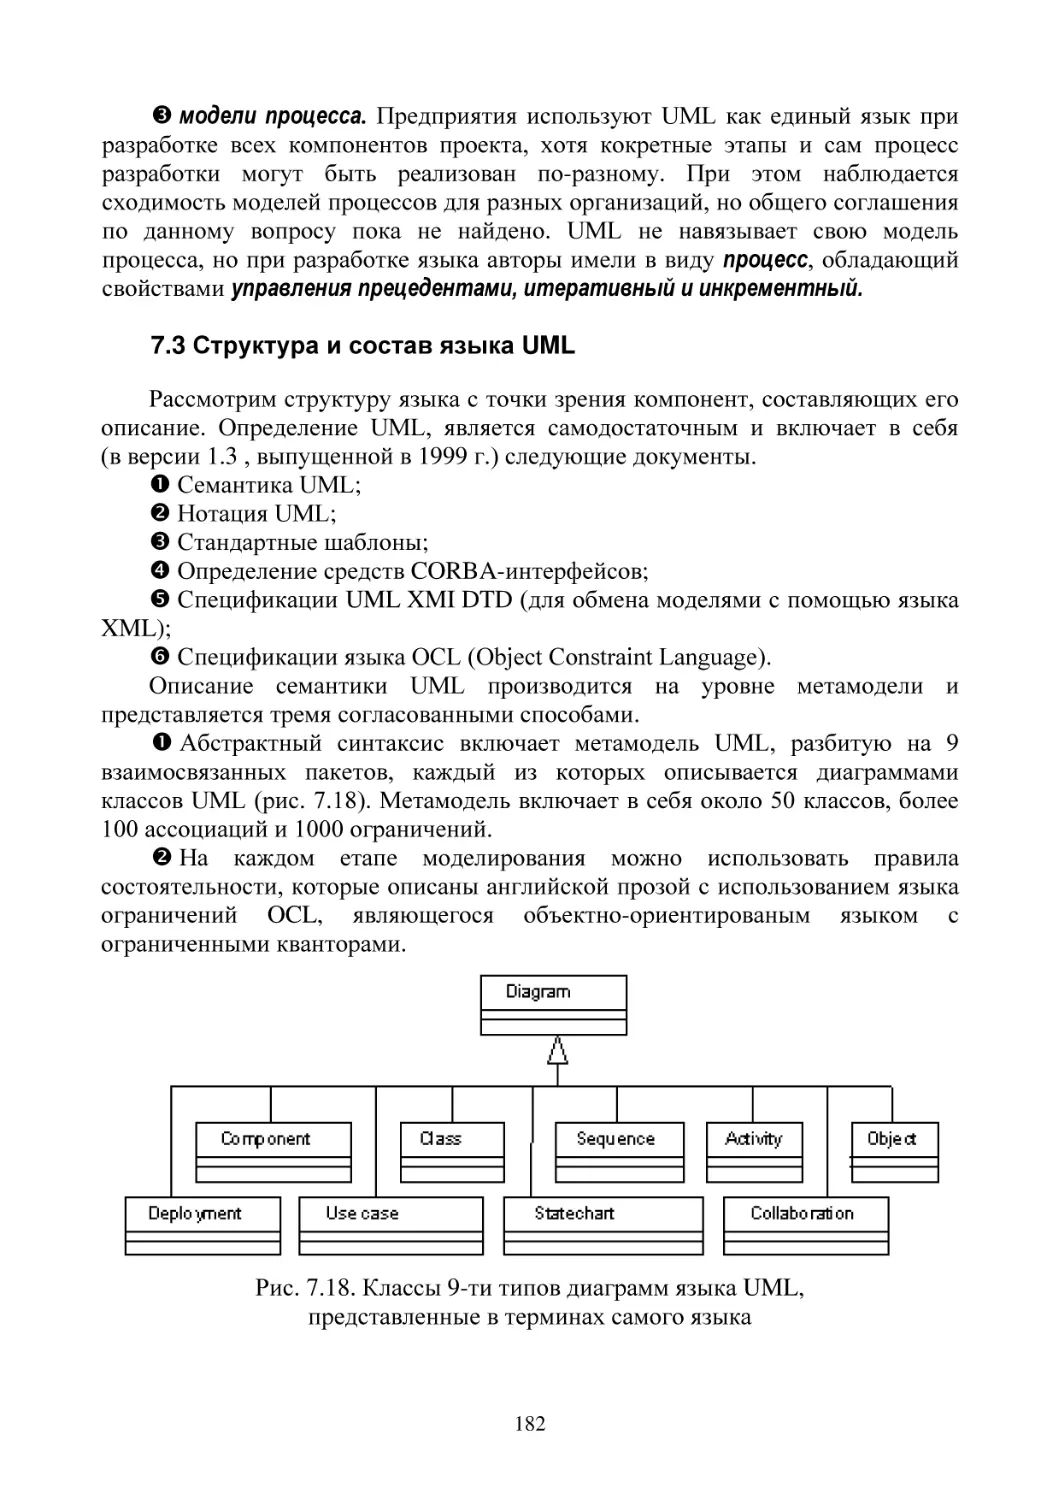 7.3 Структура и состав языка UML